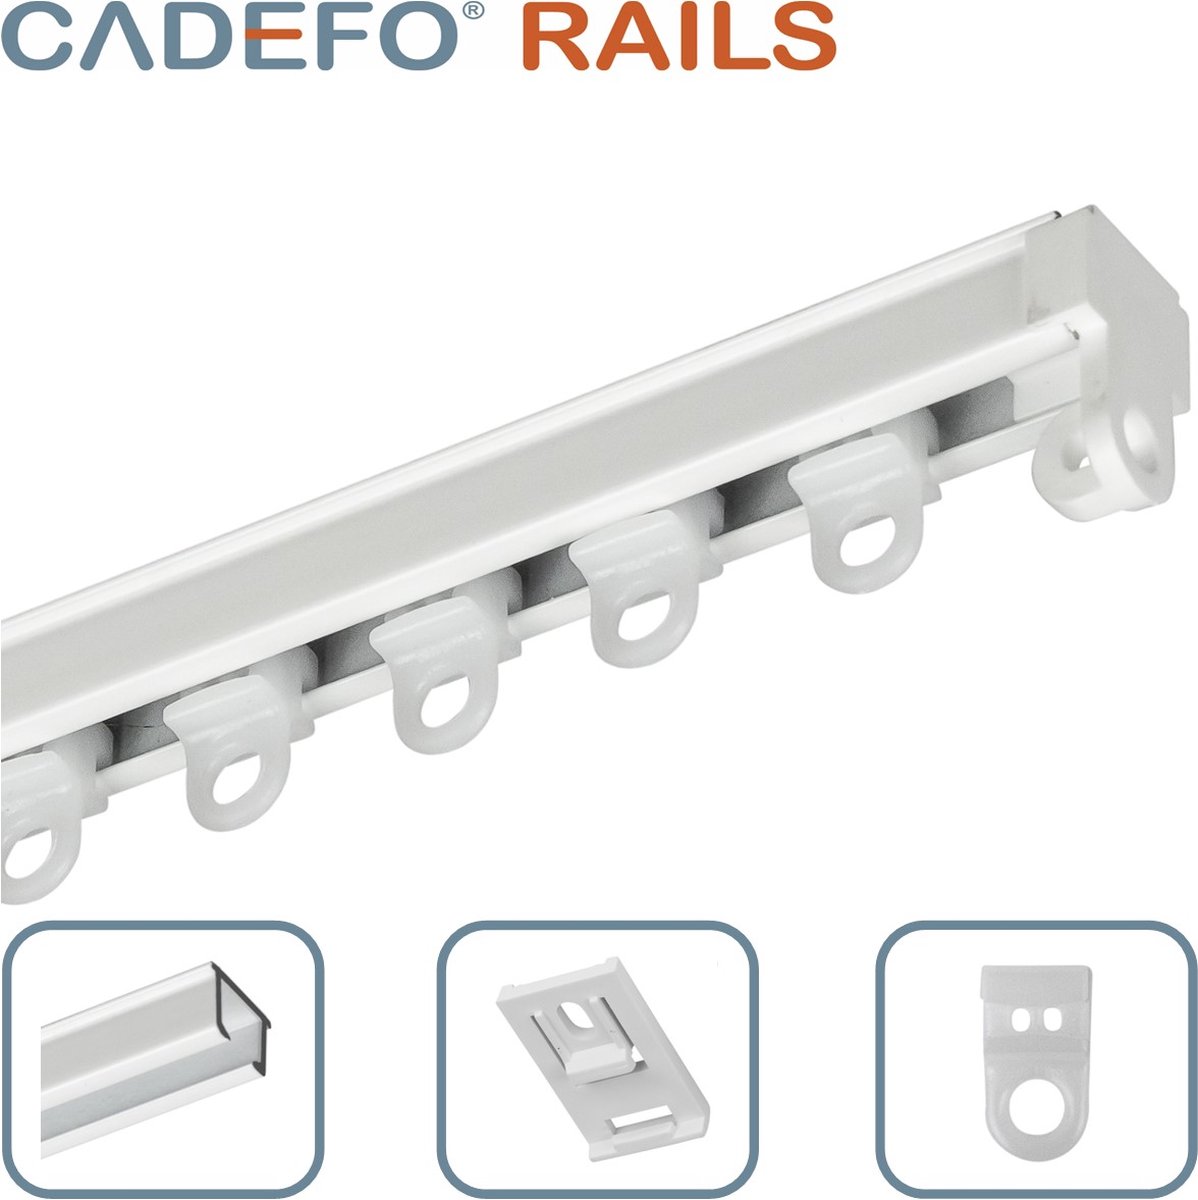 CADEFO RAILS (201 - 250 cm) Gordijnrails - Compleet op maat! - UIT 1 STUK - Leverbaar tot 6 meter - Plafondbevestiging - Lengte 239 cm